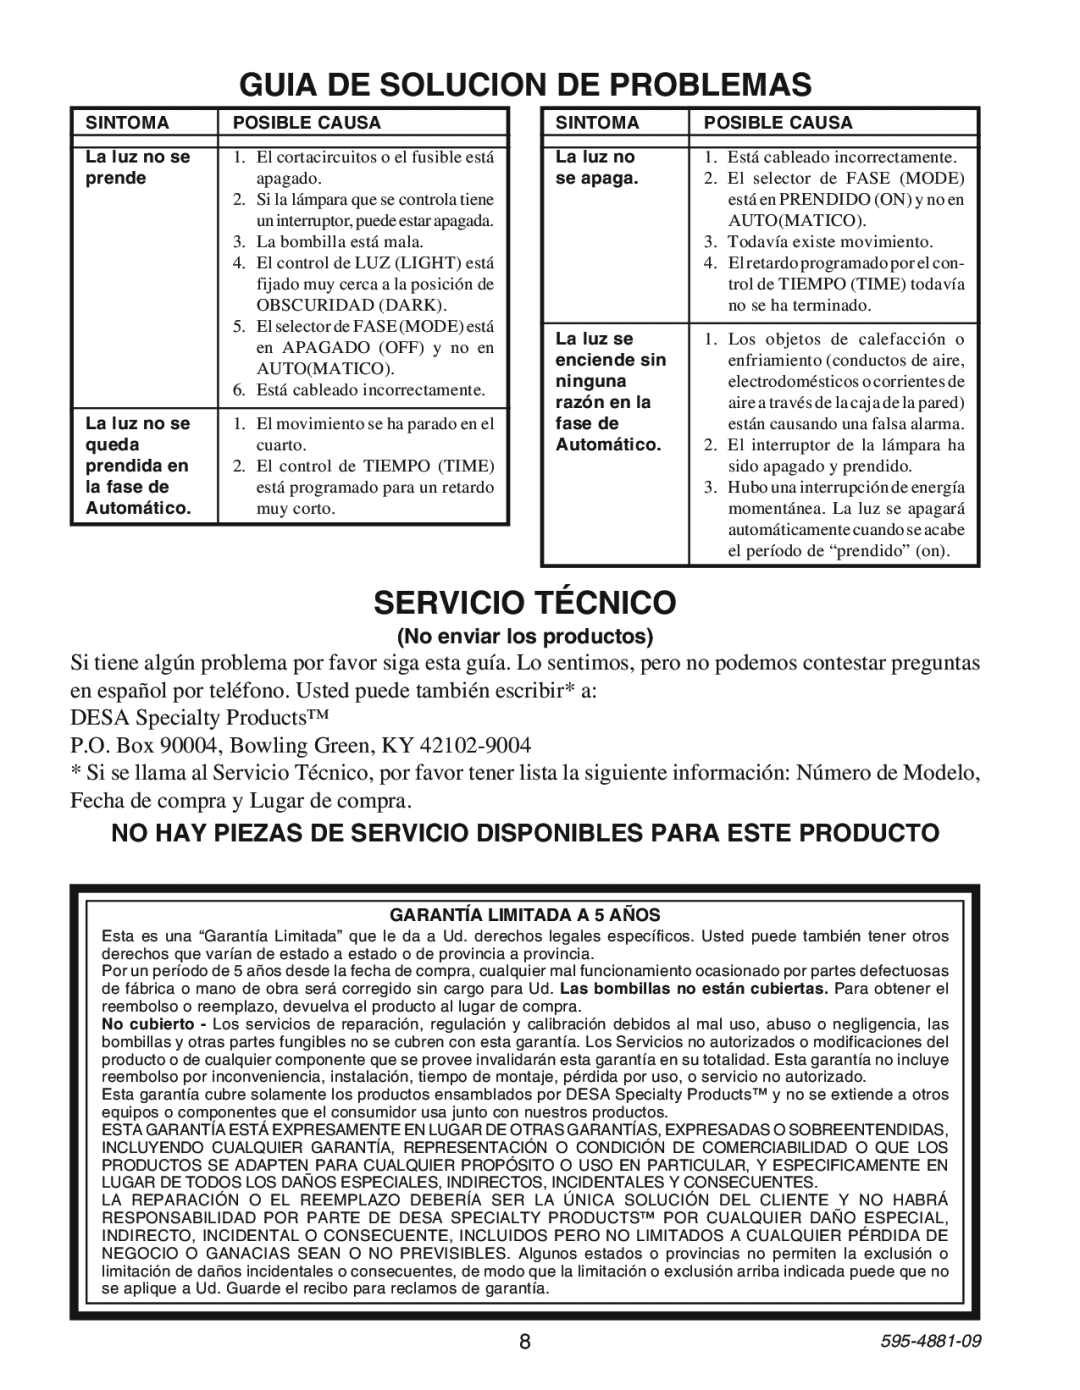 Heath Zenith SL-6105 manual Guia De Solucion De Problemas, SERVICIO TƒCNICO, DESA Specialty Productsª, 595-4881-09 